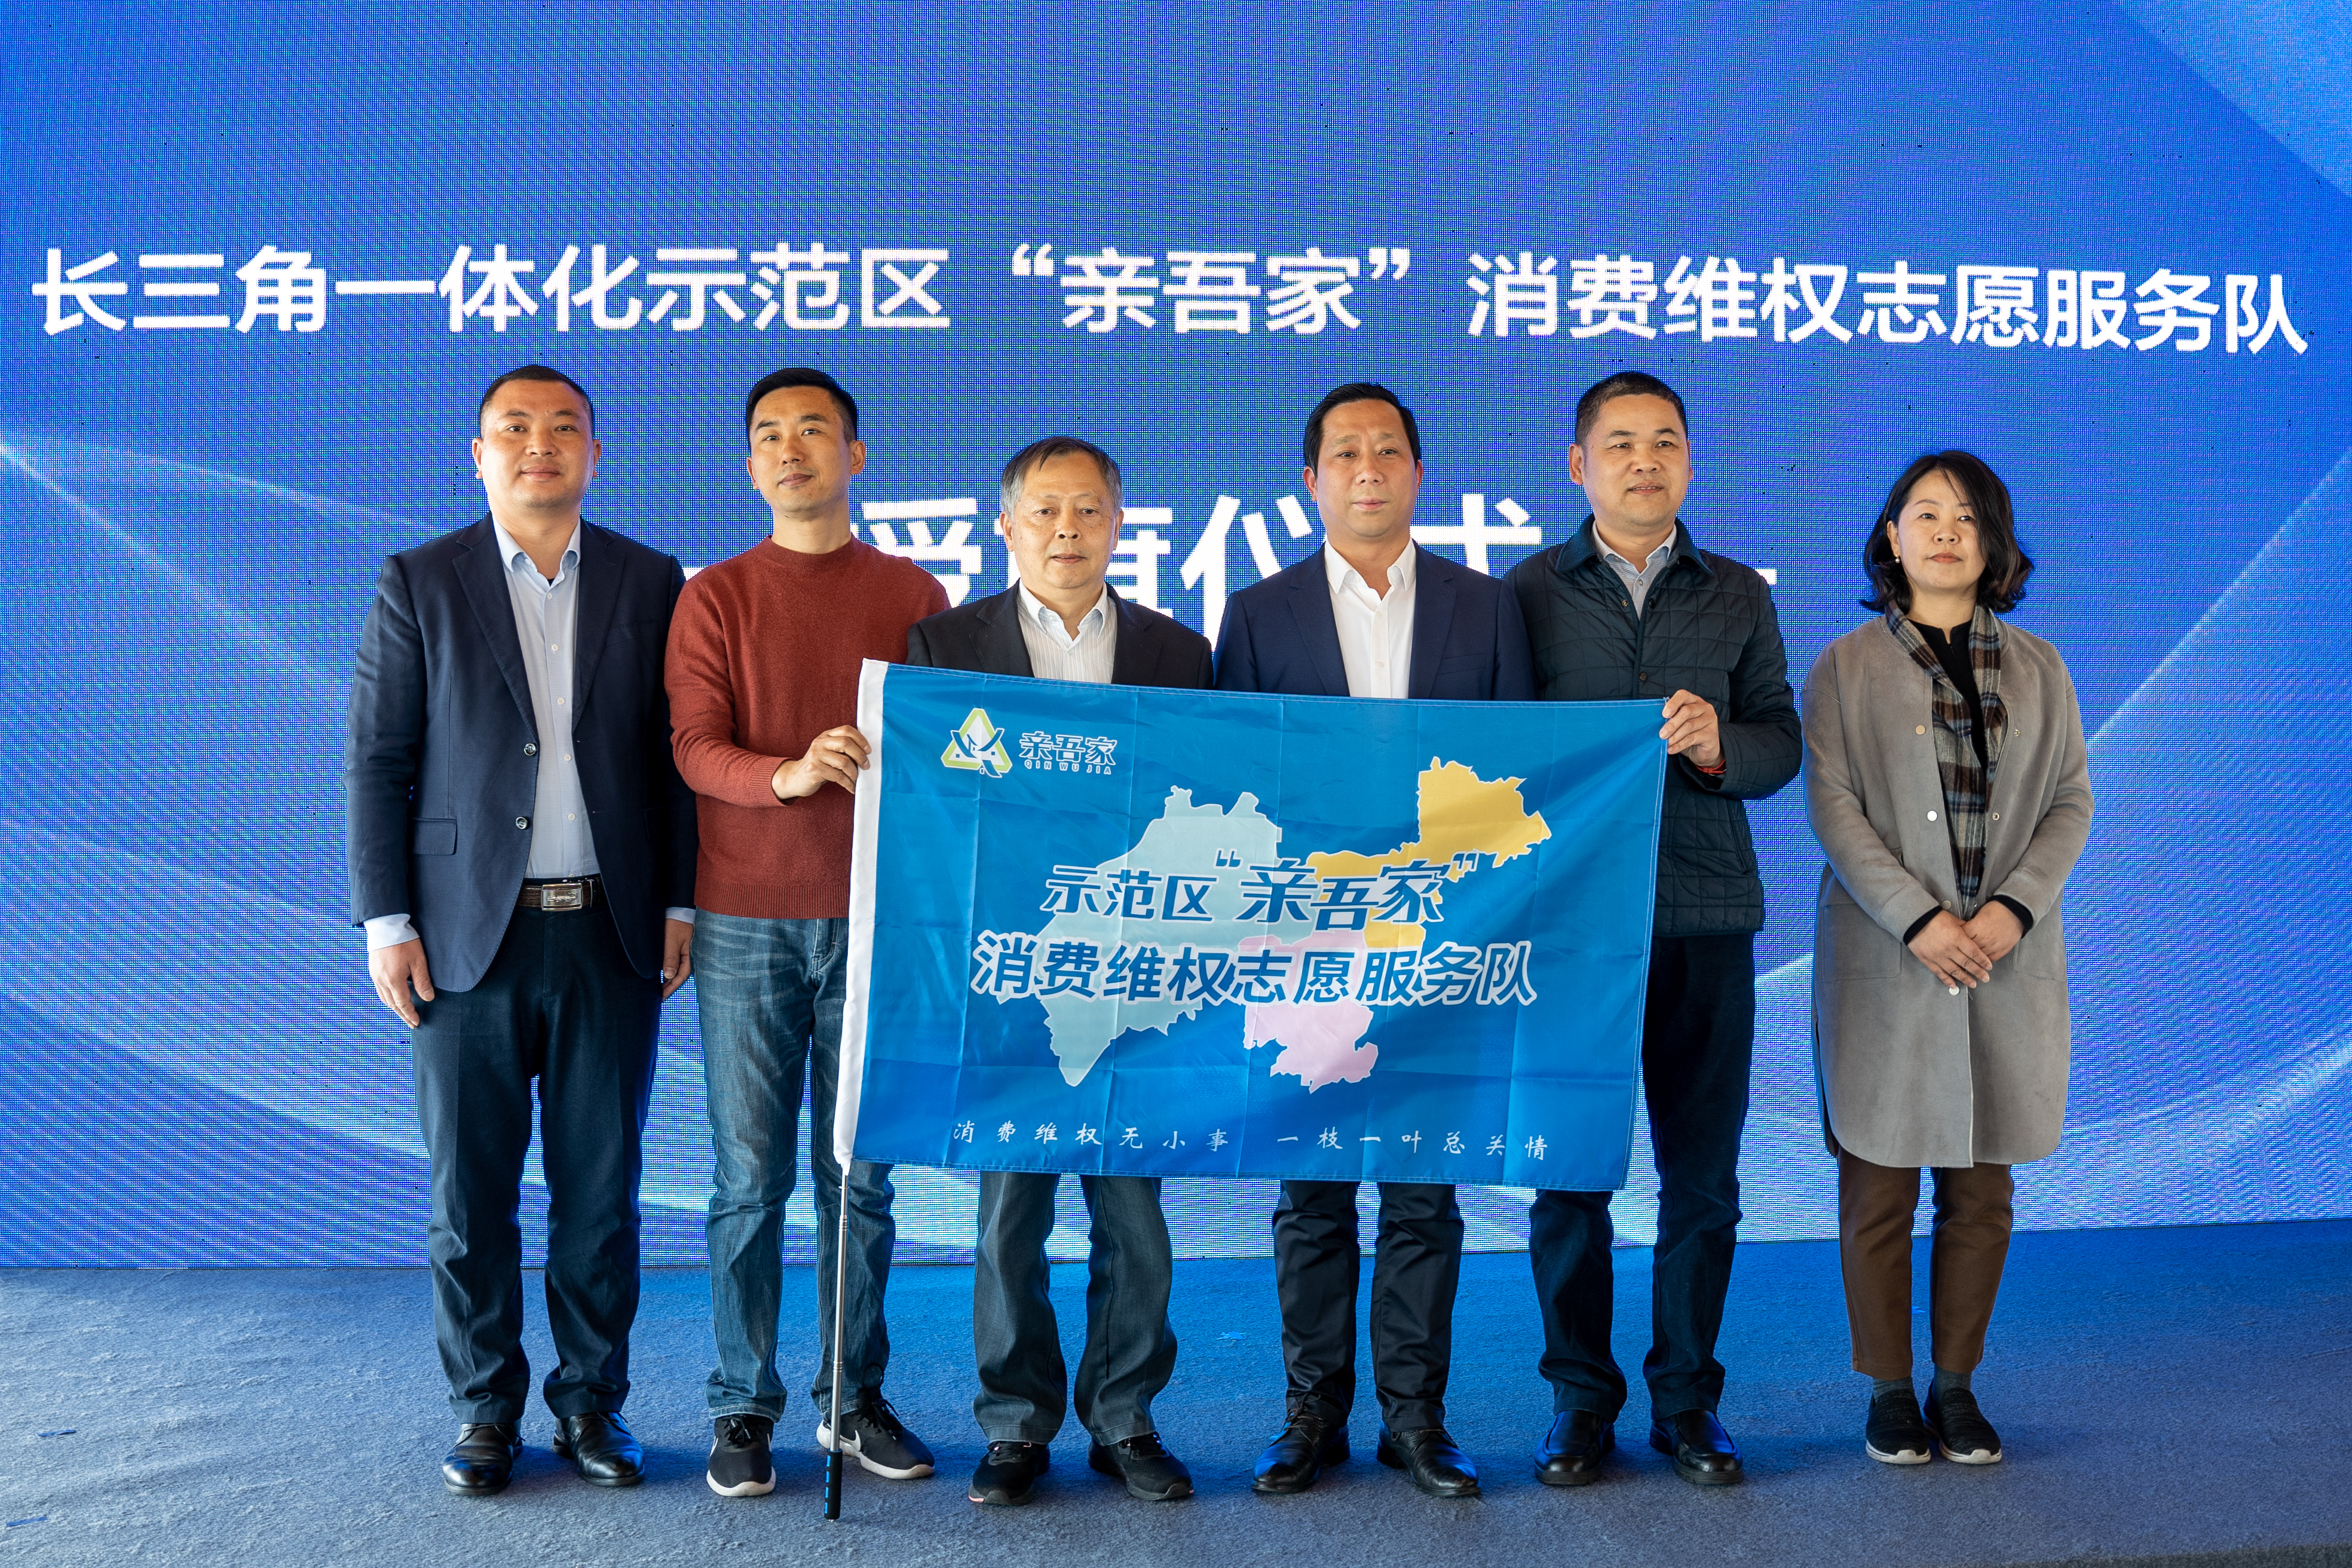 上海青浦：全力打造消费维权新格局 示范领跑“满意消费长三角”